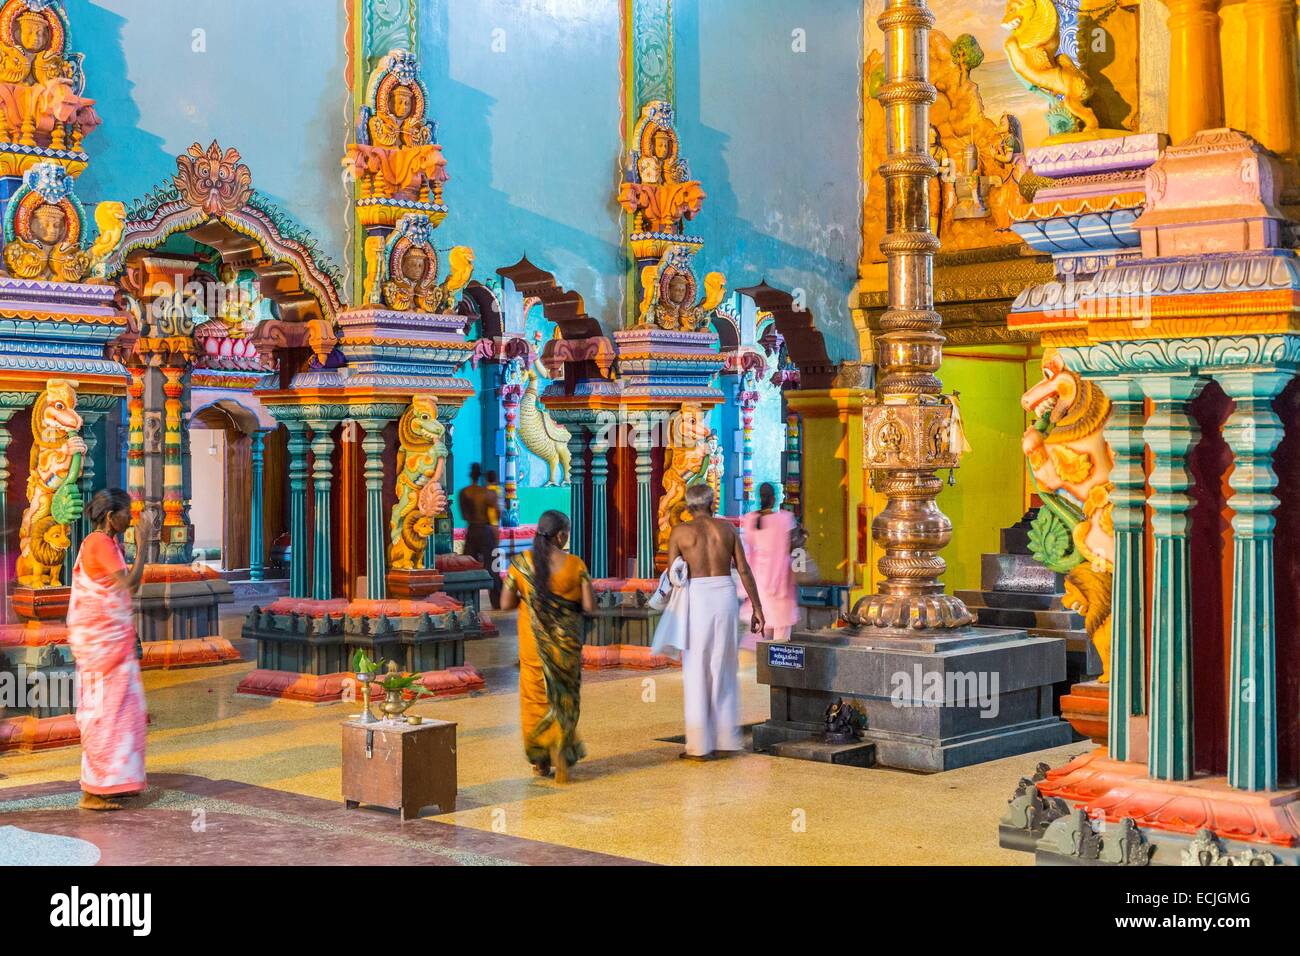 Sri Lanka, province du Nord, district de Jaffna, Keerimalai, temple hindou dédié à Shiva et construit en 2012 Naguleswaram Banque D'Images